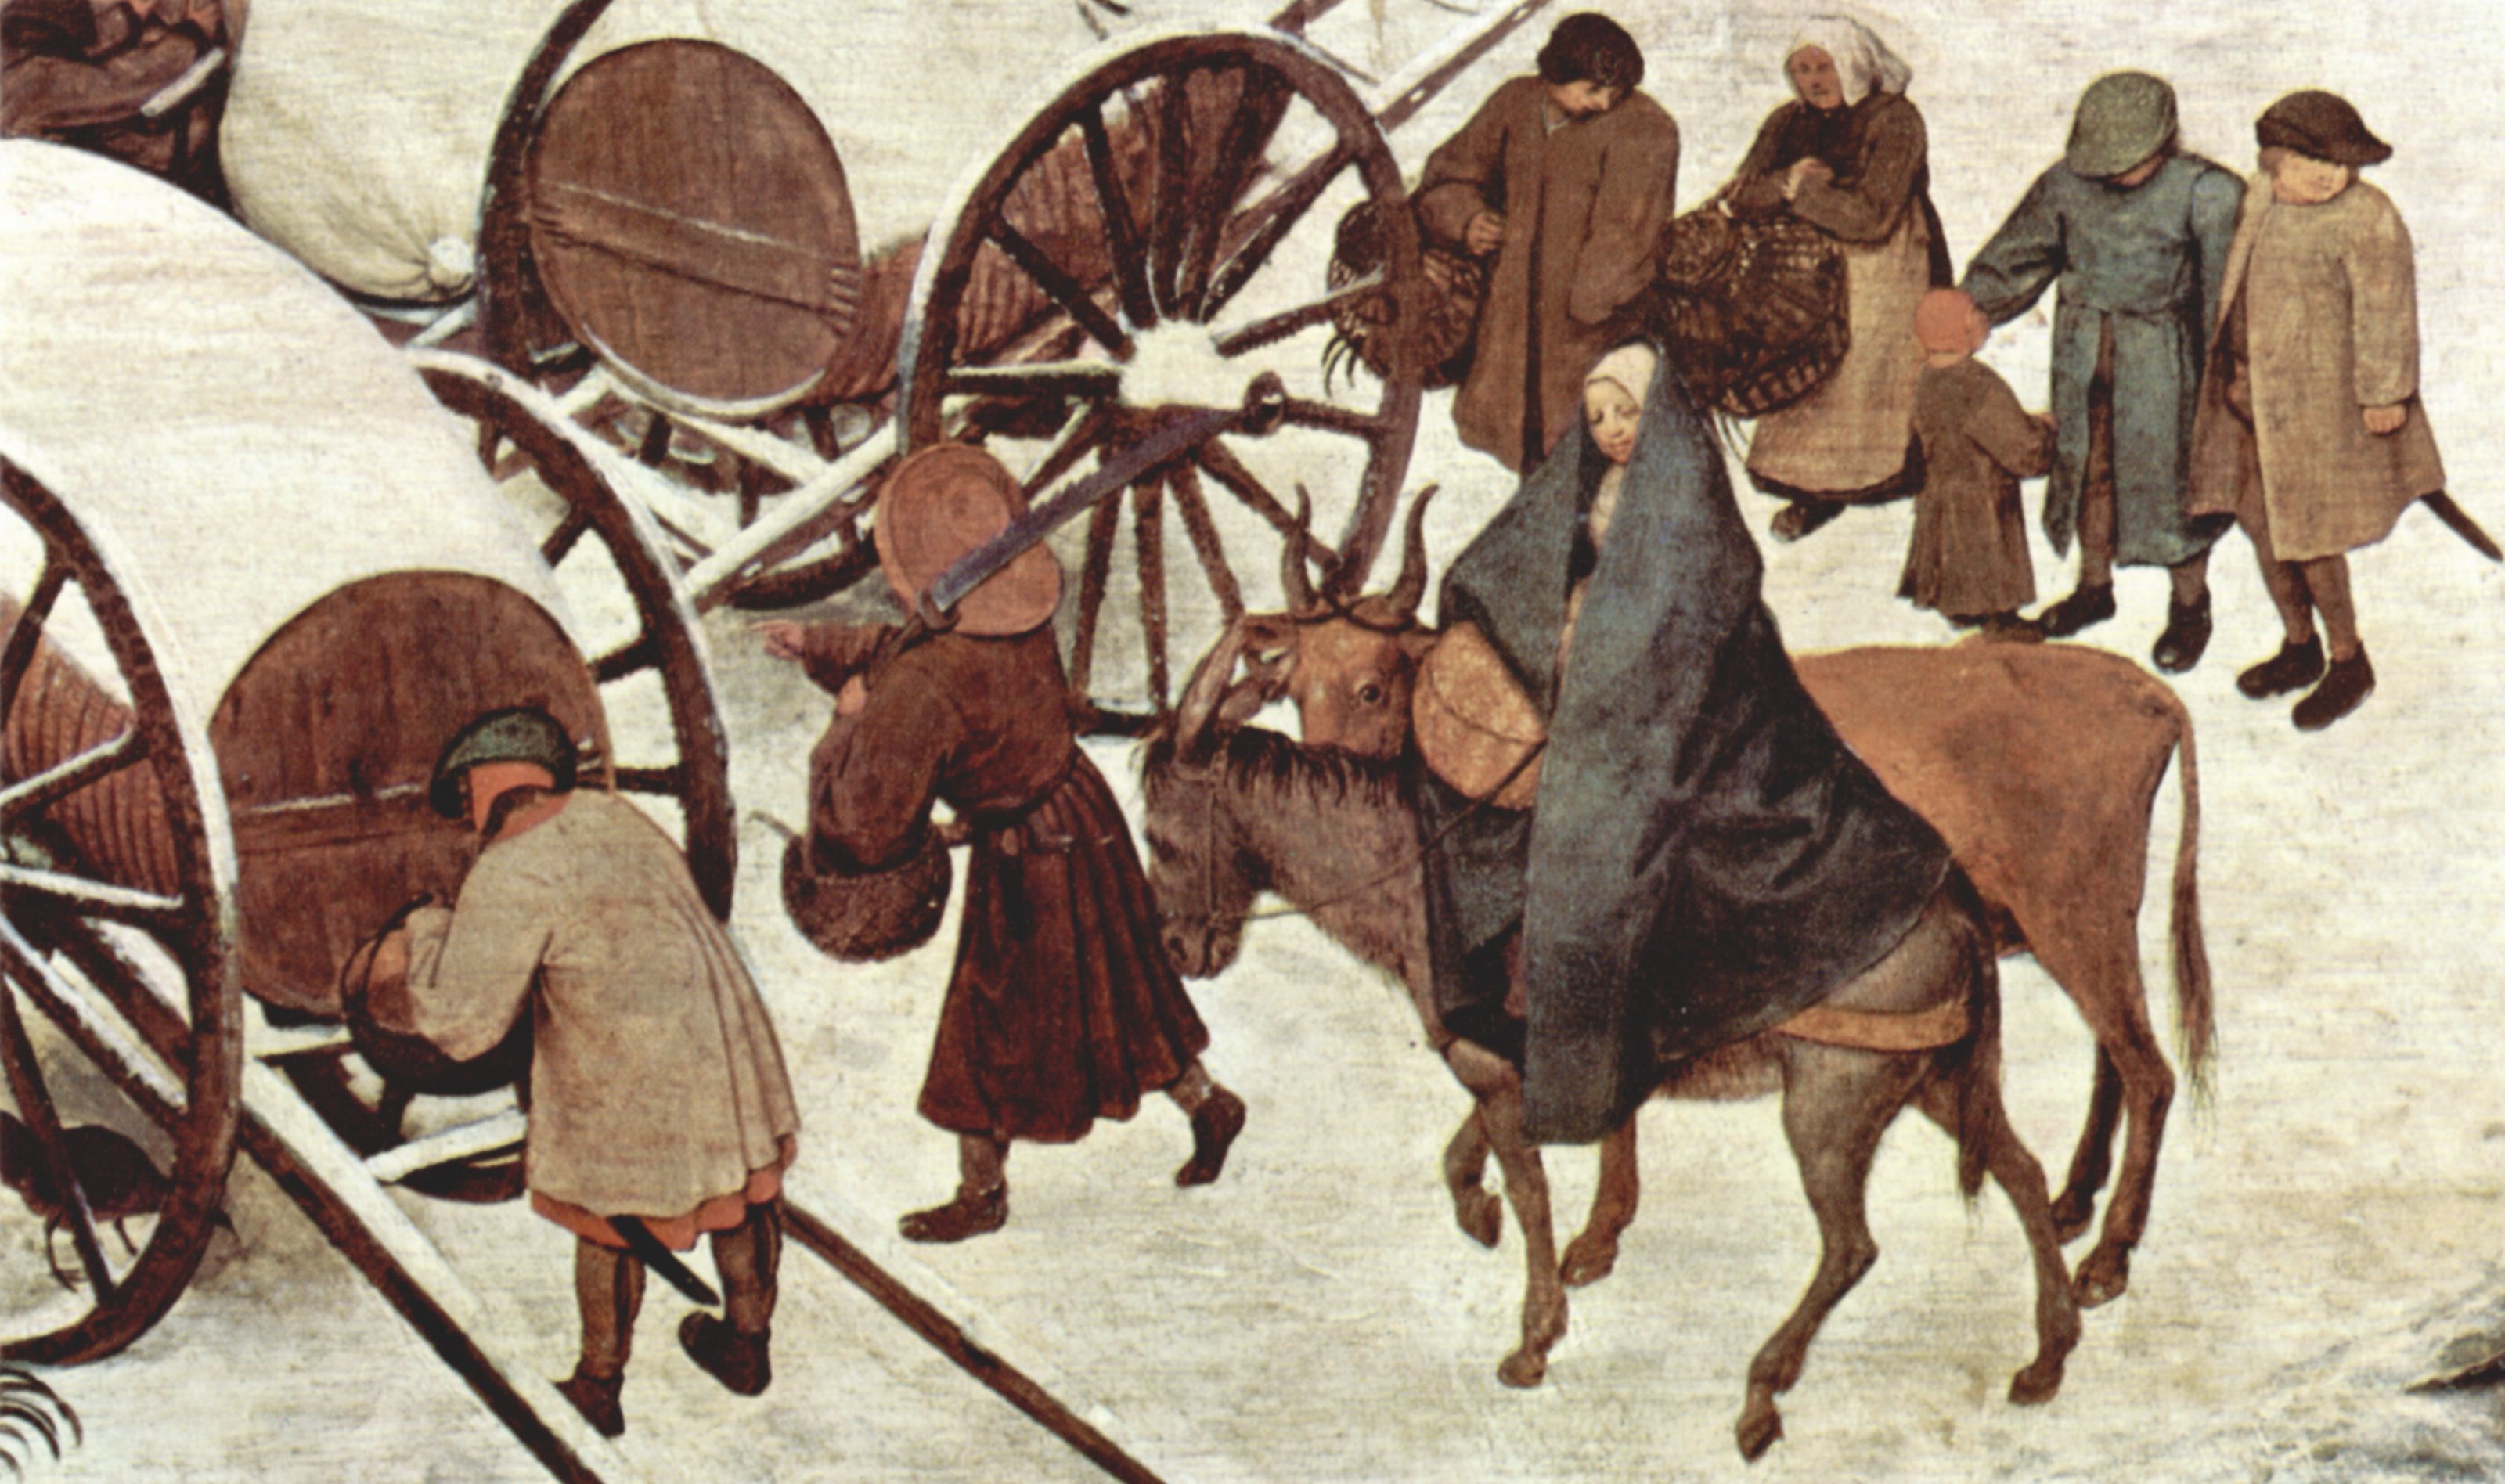 Pieter Bruegel d. .: Volkszhlung zu Bethlehem, Detail